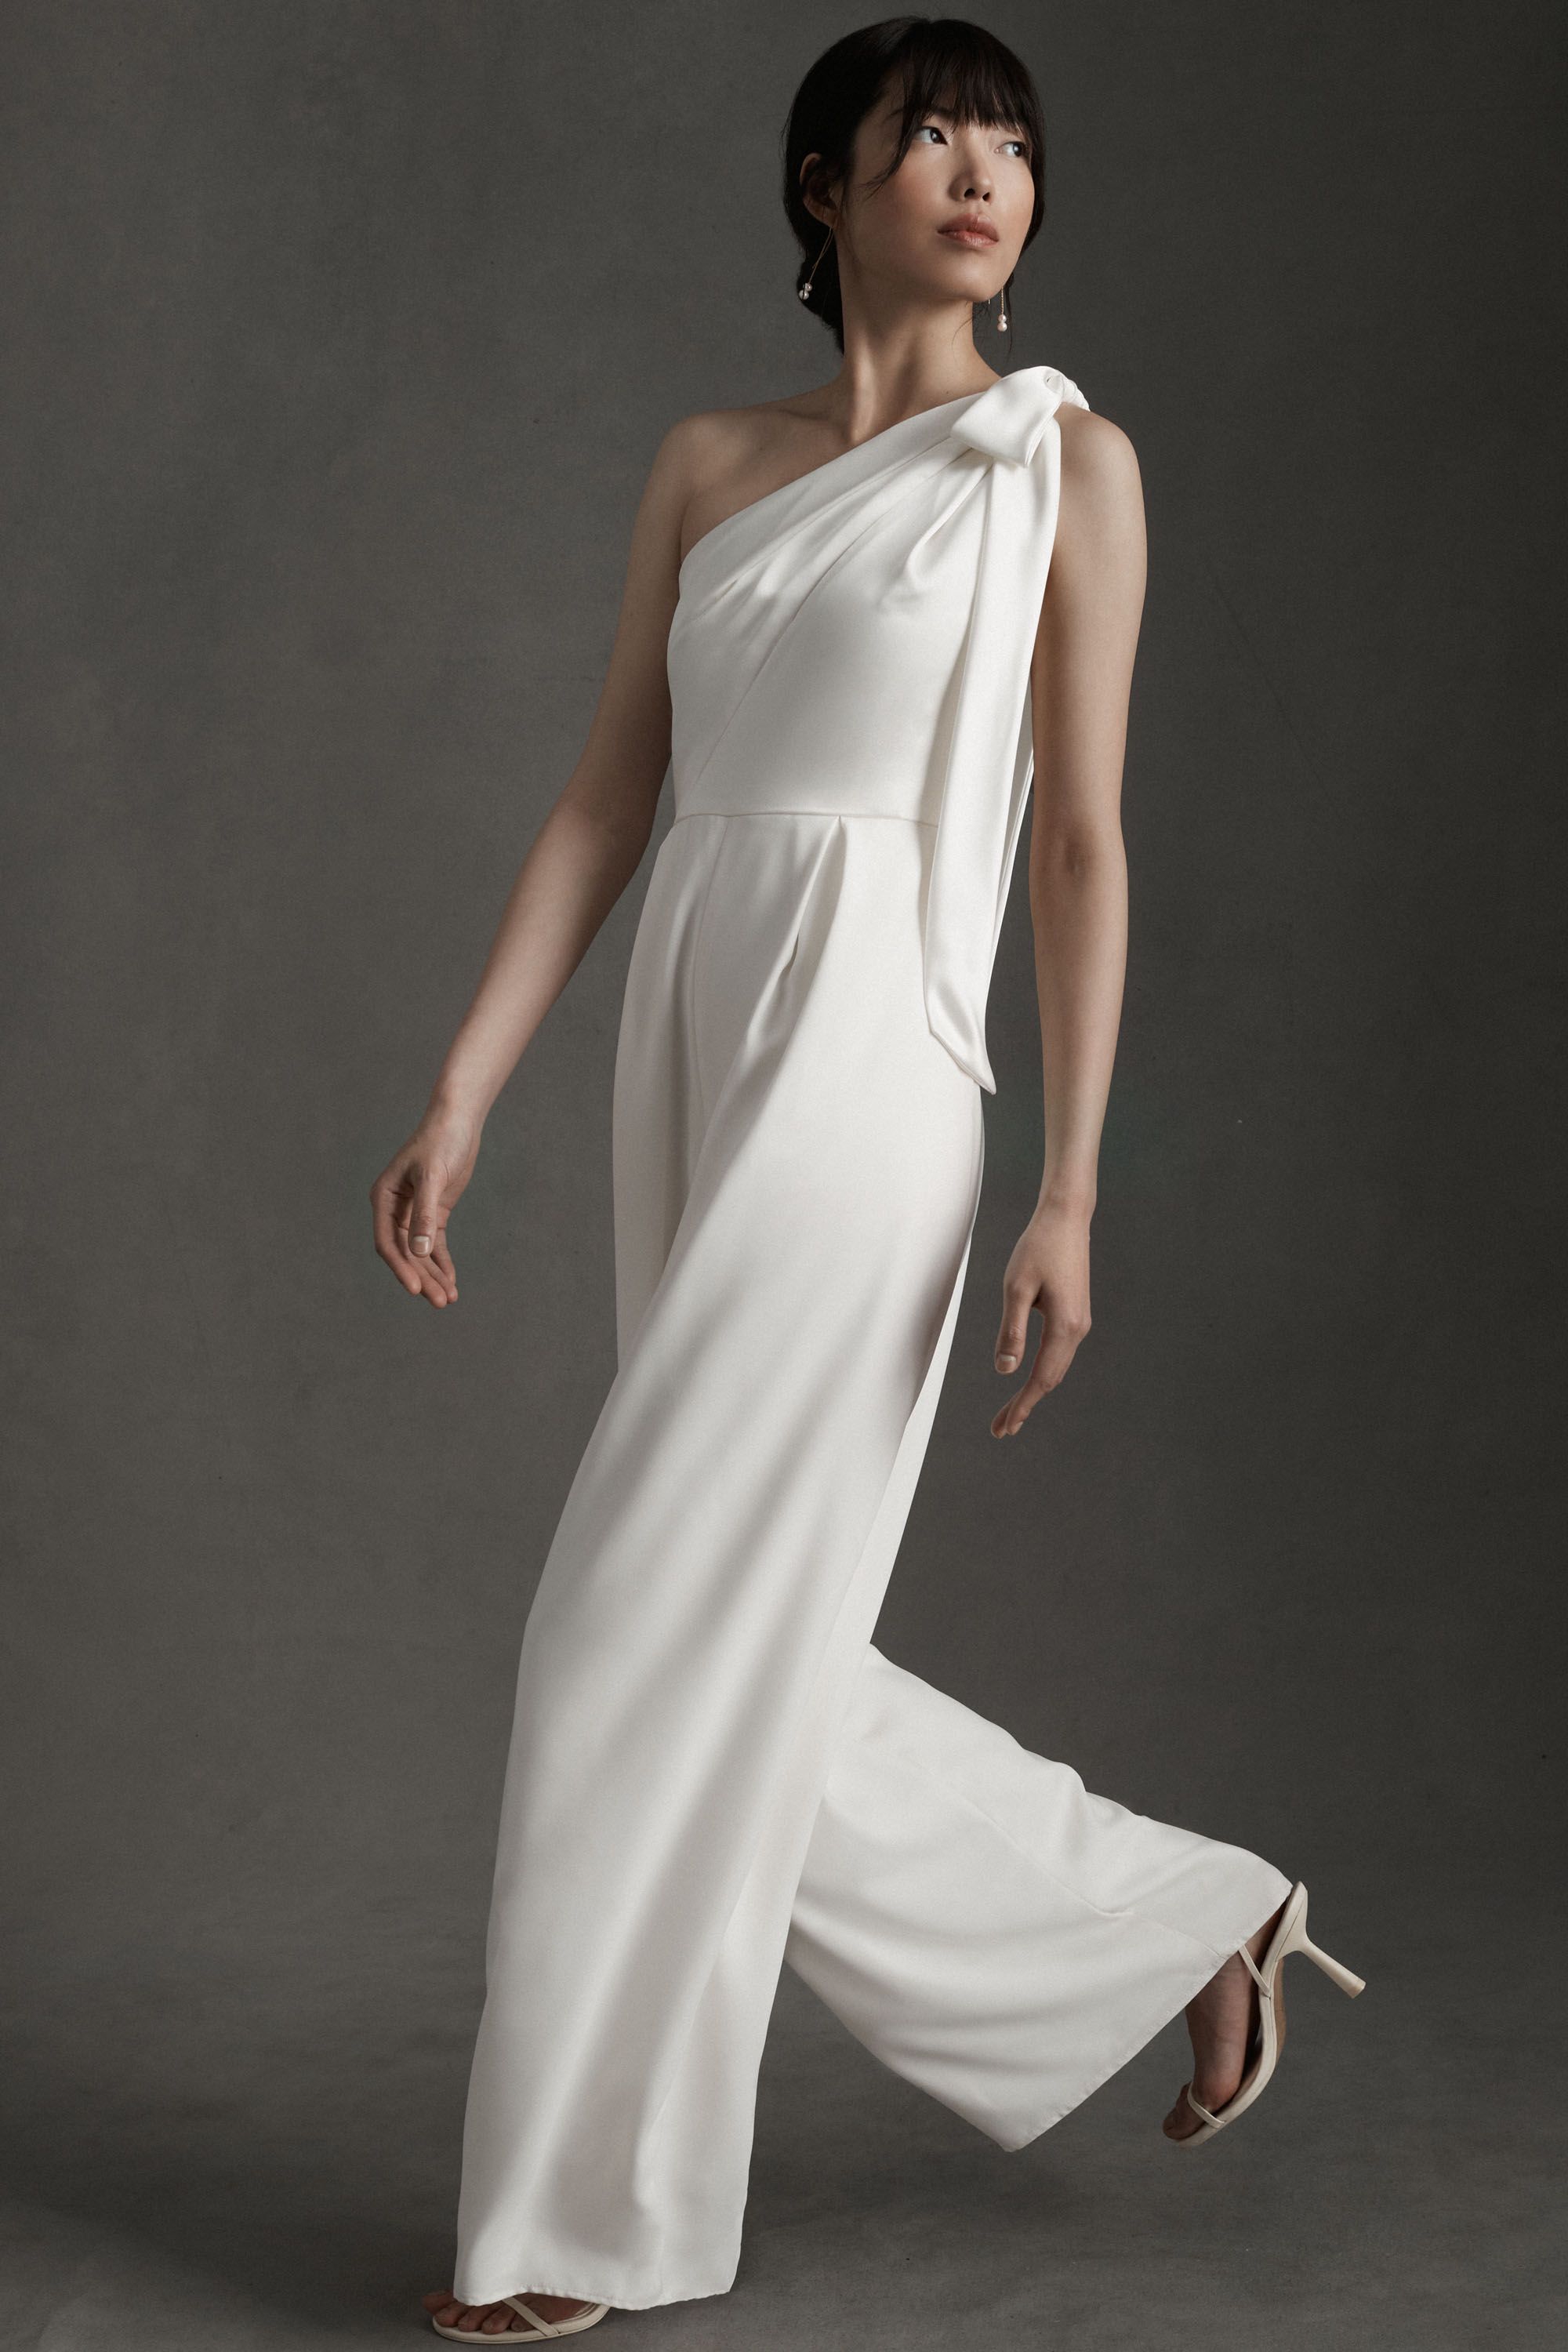 Dénicheur de robes de mariée simples, modernes et pas chères, The Wedding Explorer